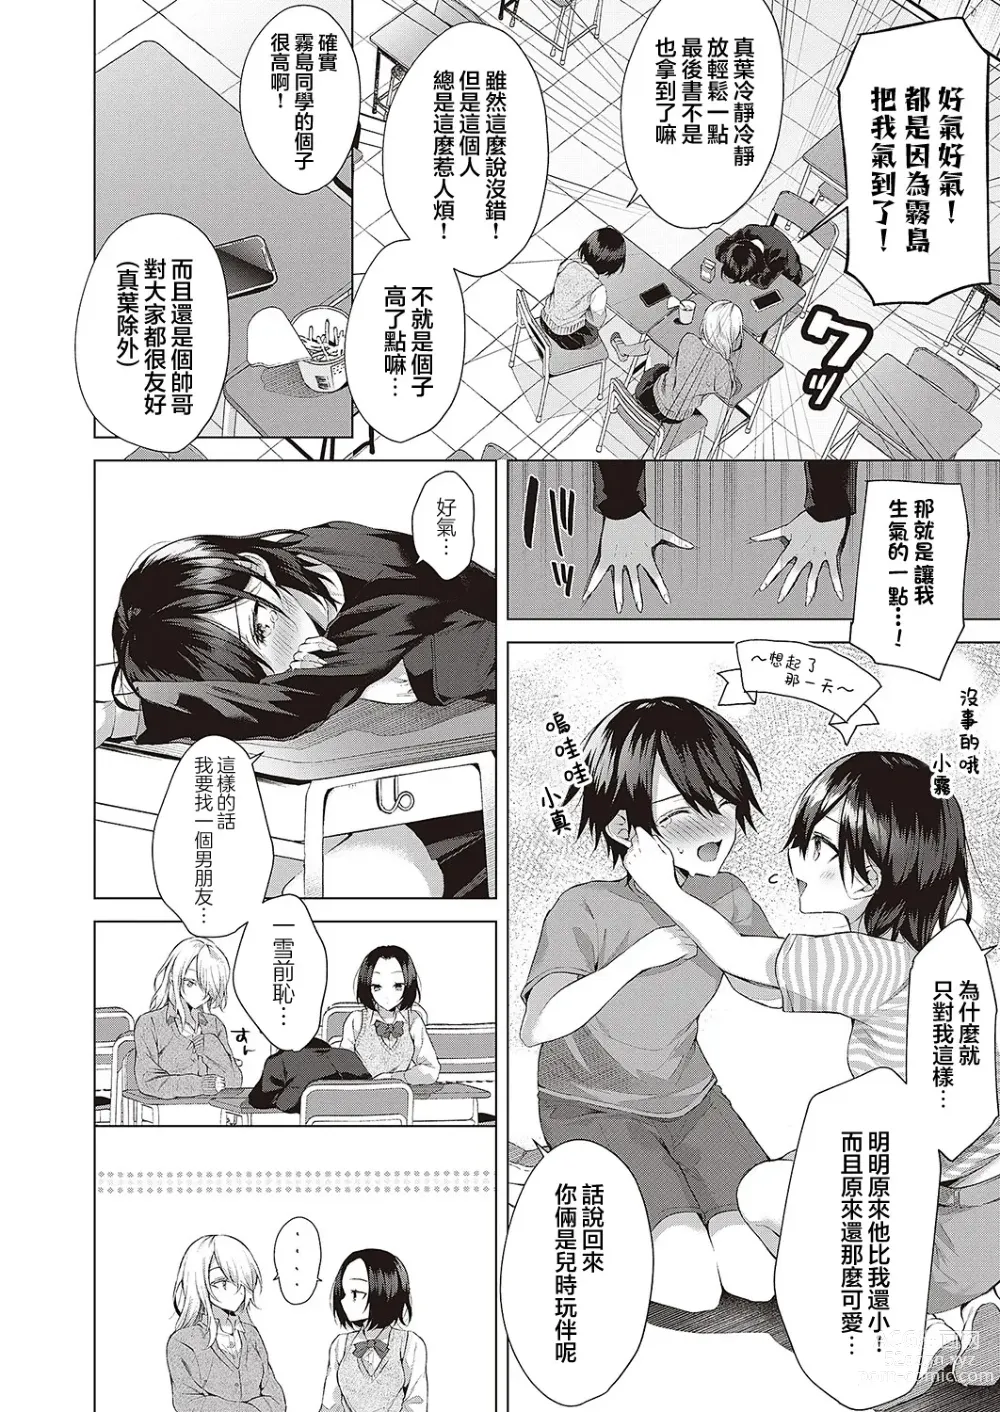 Page 4 of manga OUTOTSU Lovemotion!